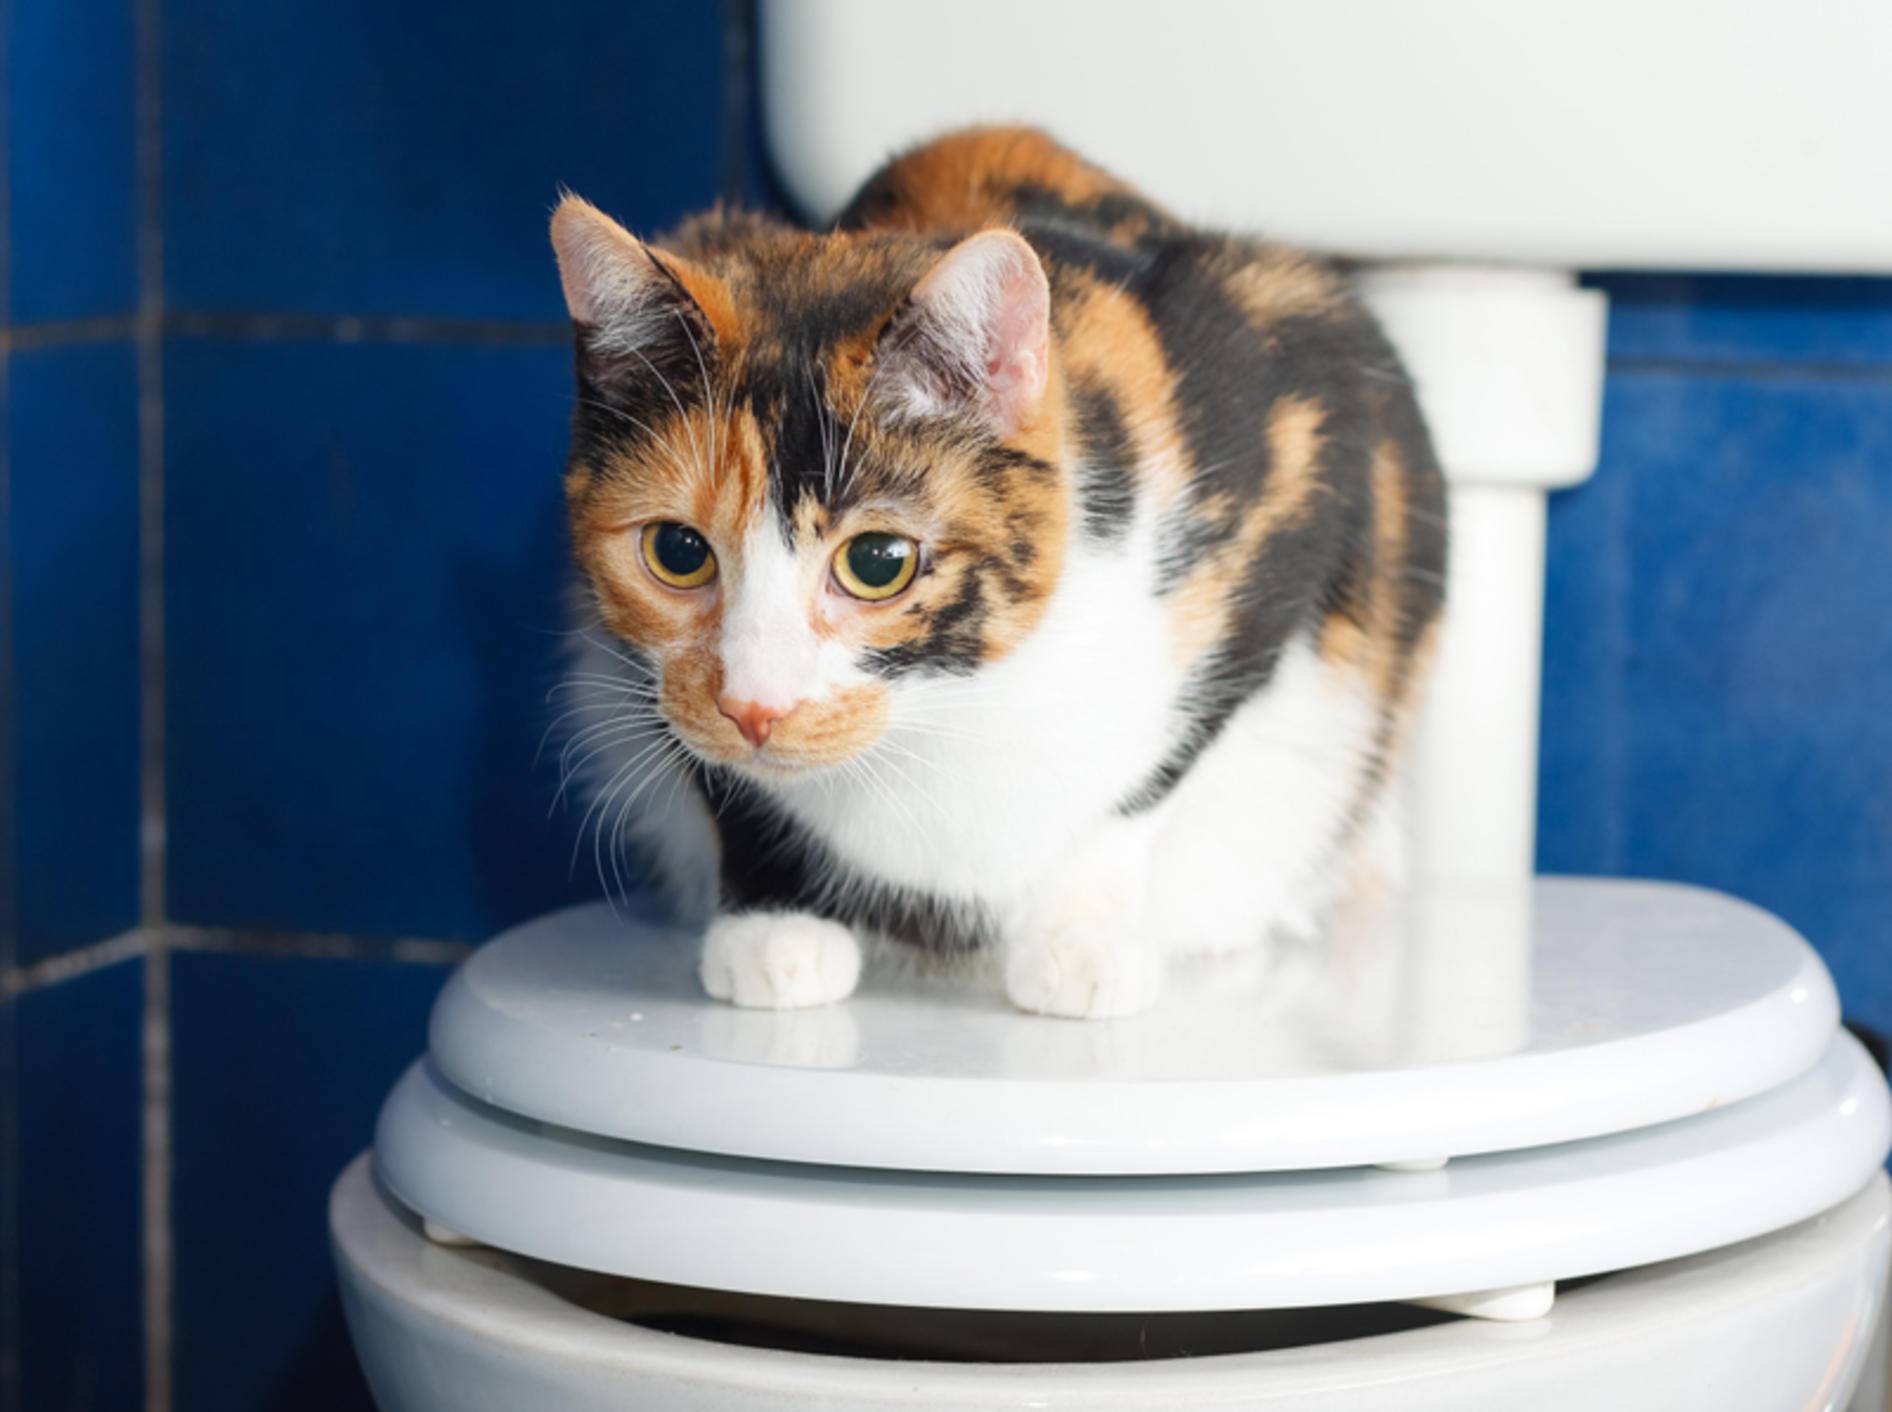 "Ich möchte nur hier sitzen, mein Geschäft verrichte ich lieber auf dem Katzenklo", scheint diese Glückskatze zu denken – Shutterstock / Xseon